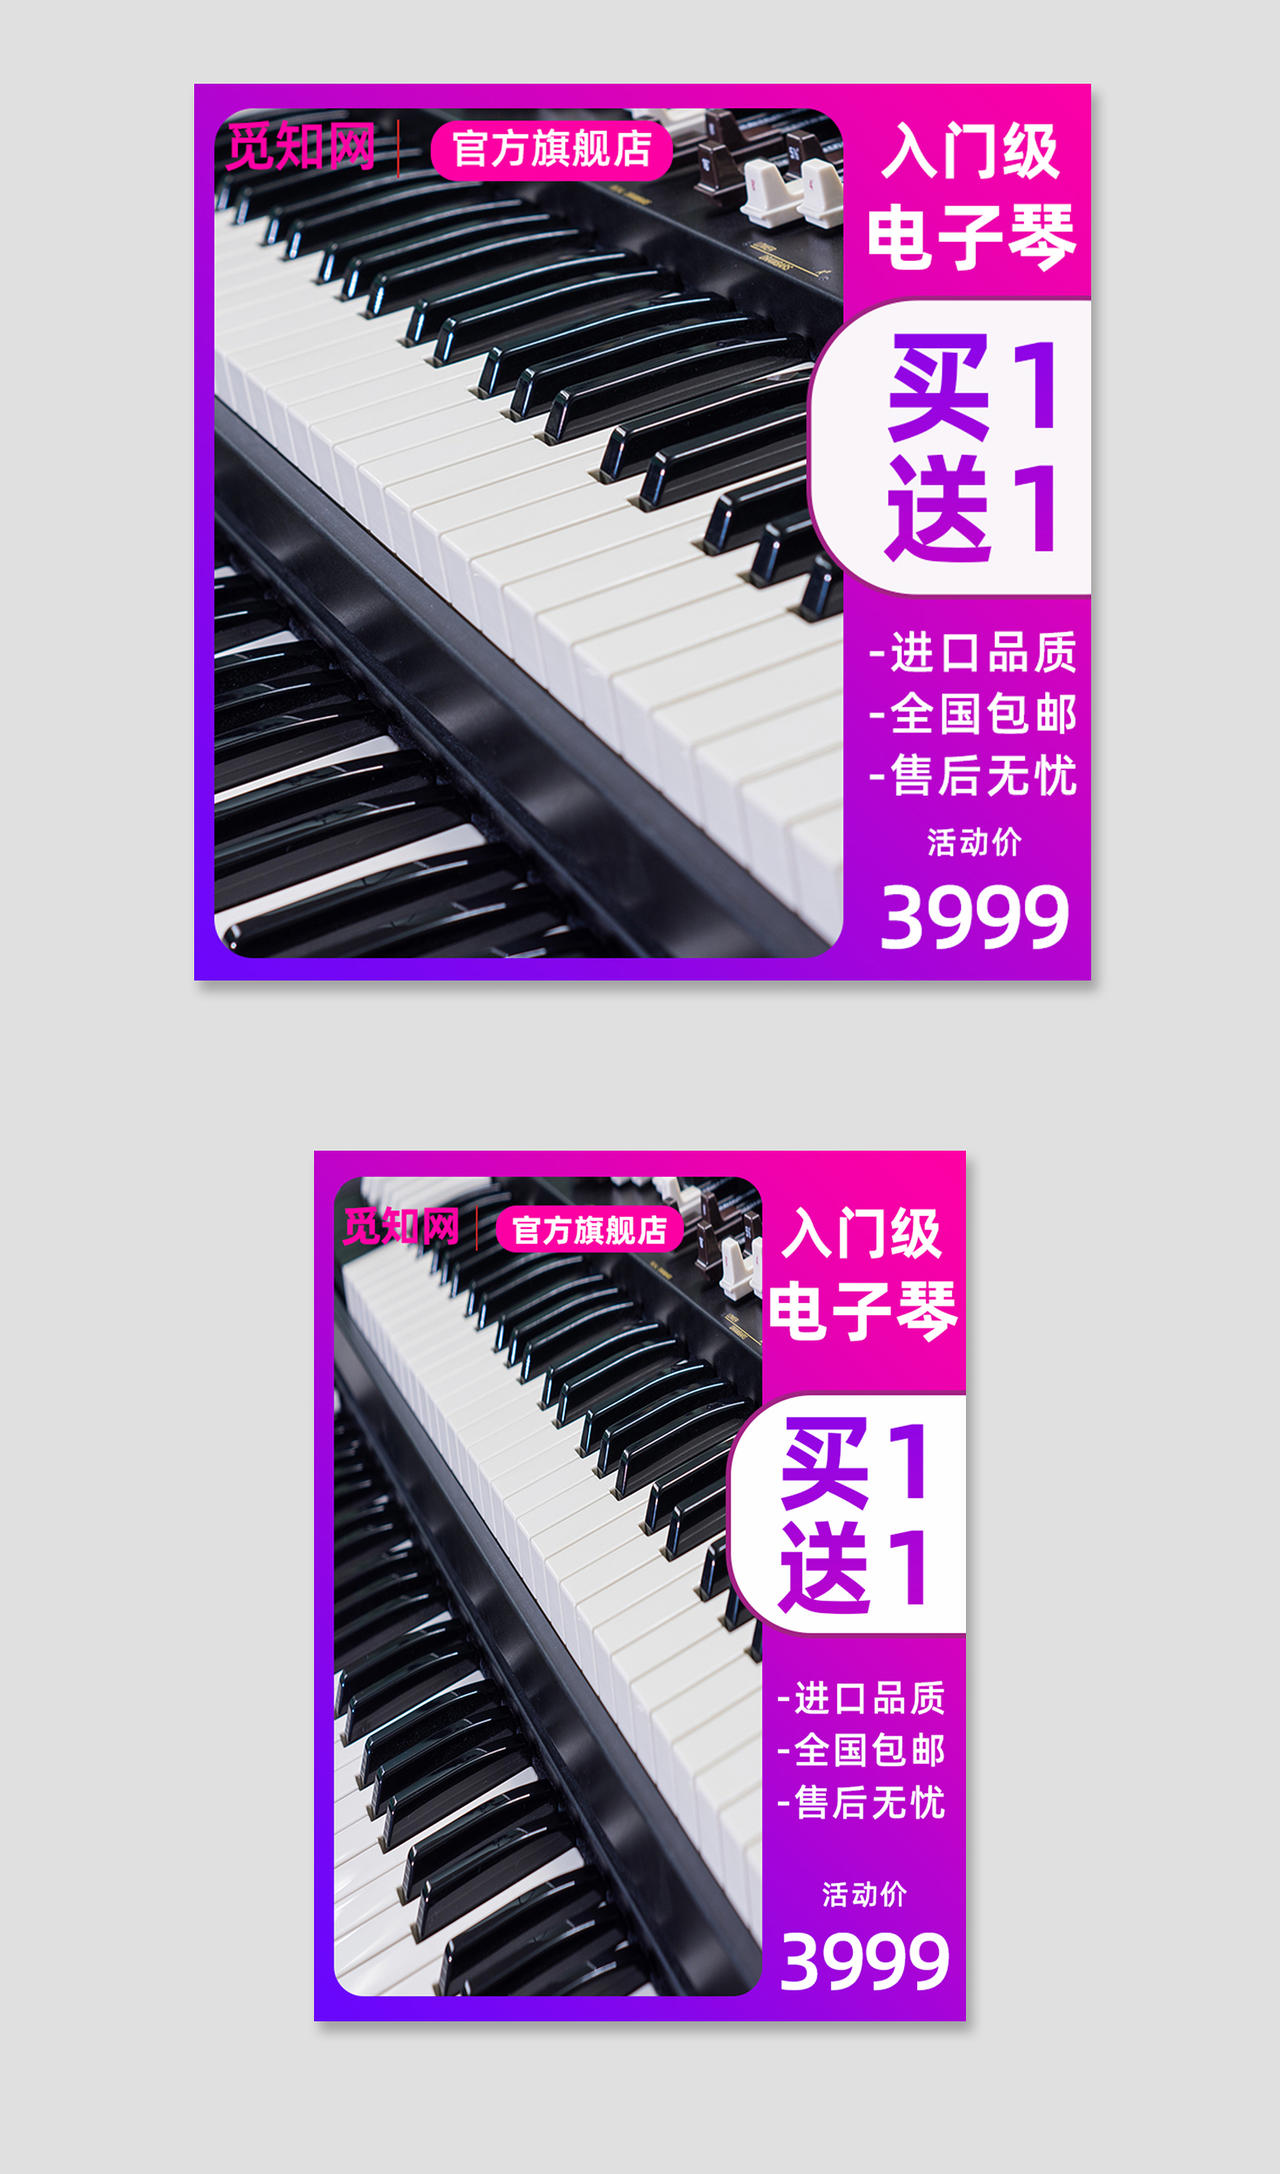 粉紫色简约买1送1入门级电子琴主图钢琴主图